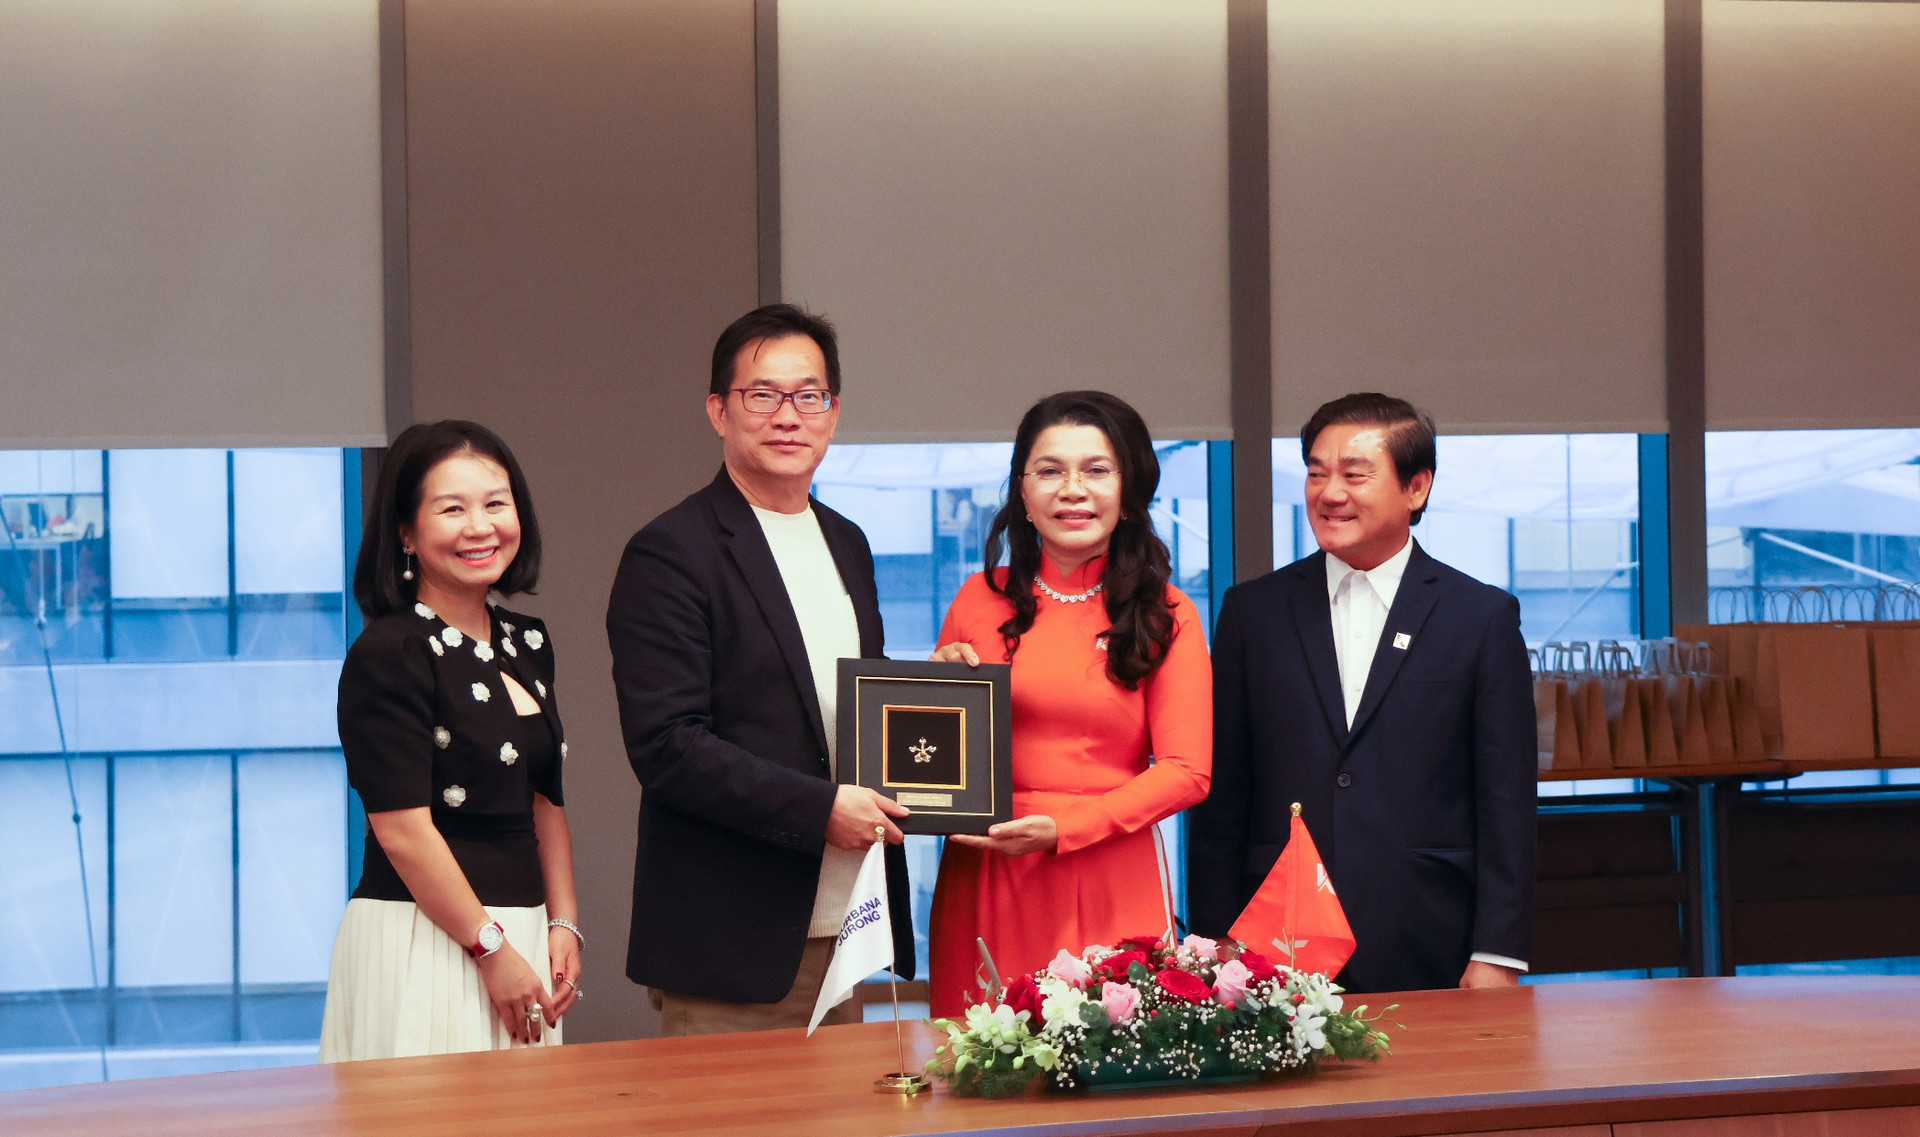 Lãnh đạo Tập đoàn Surbana Jurong tặng quà lưu niệm đến lãnh đạo Kim Oanh Group thay cho lời chúc mừng và cam kết hợp tác thành công.